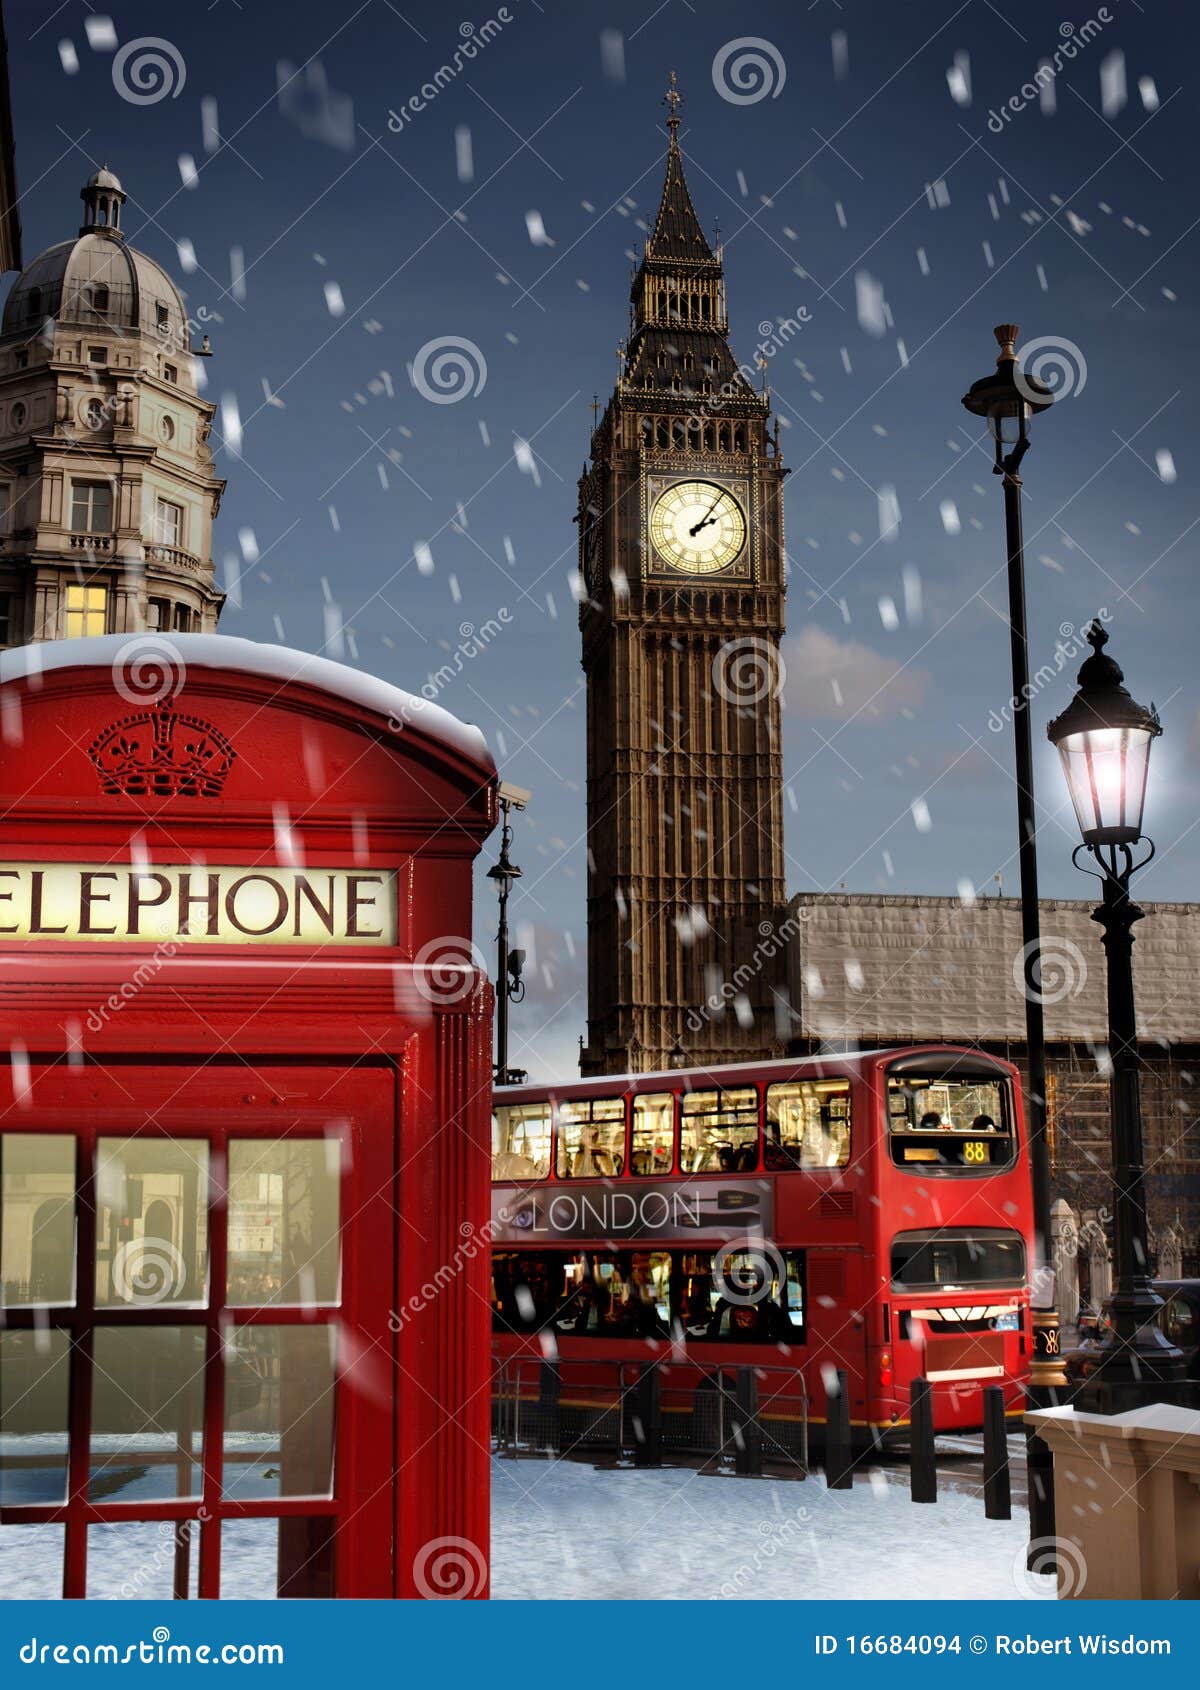 London At Christmas